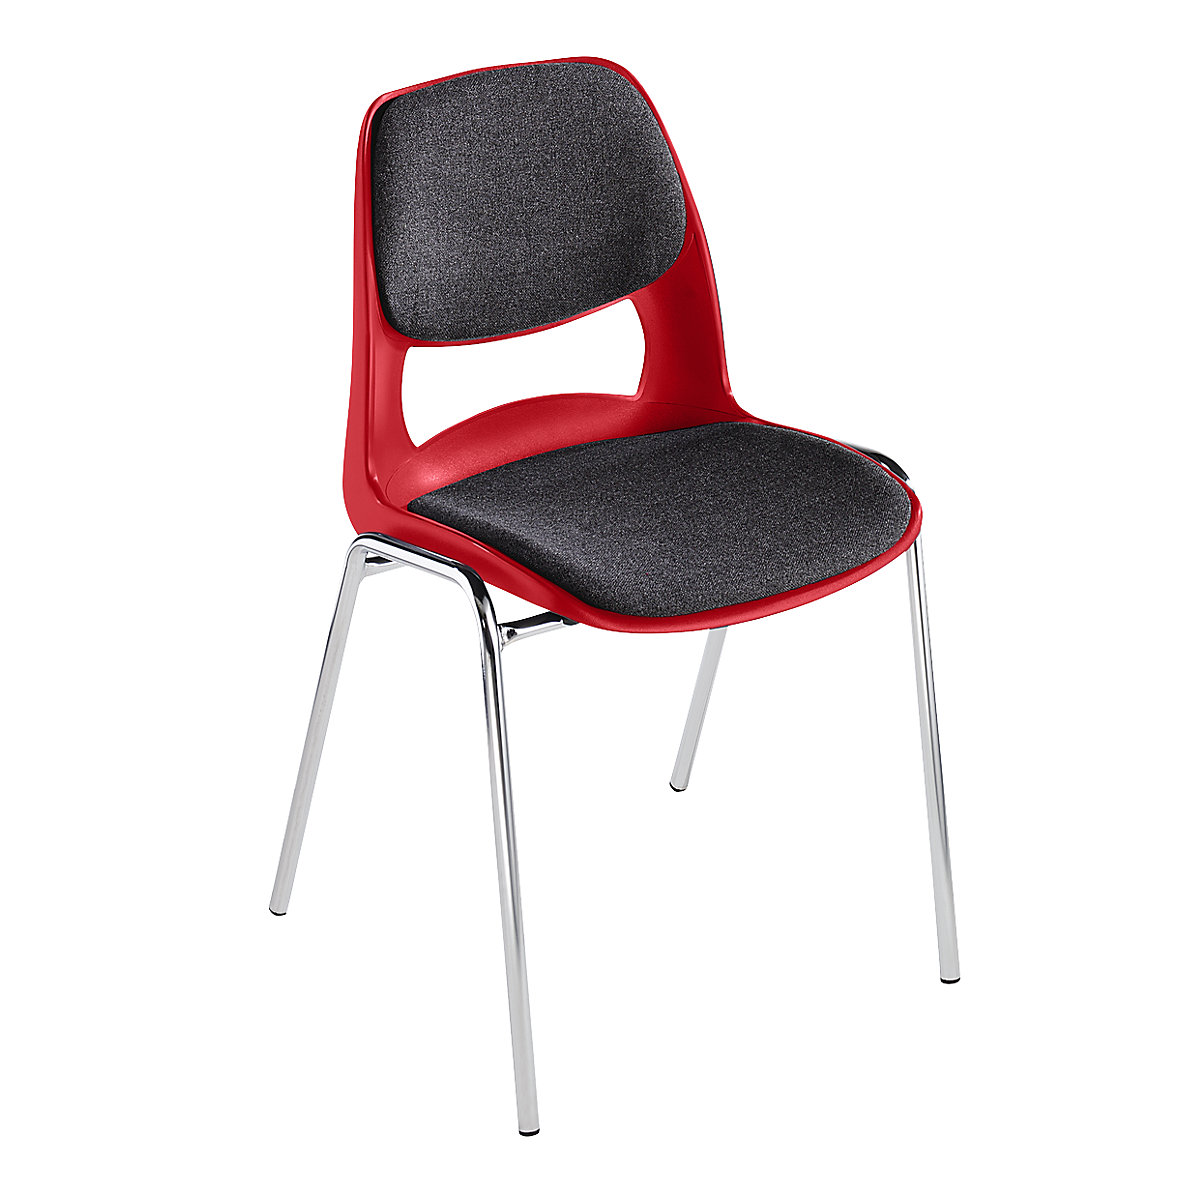 Chaise à coque en polypropylène, avec rembourrage gris, rouge, lot de 4-5